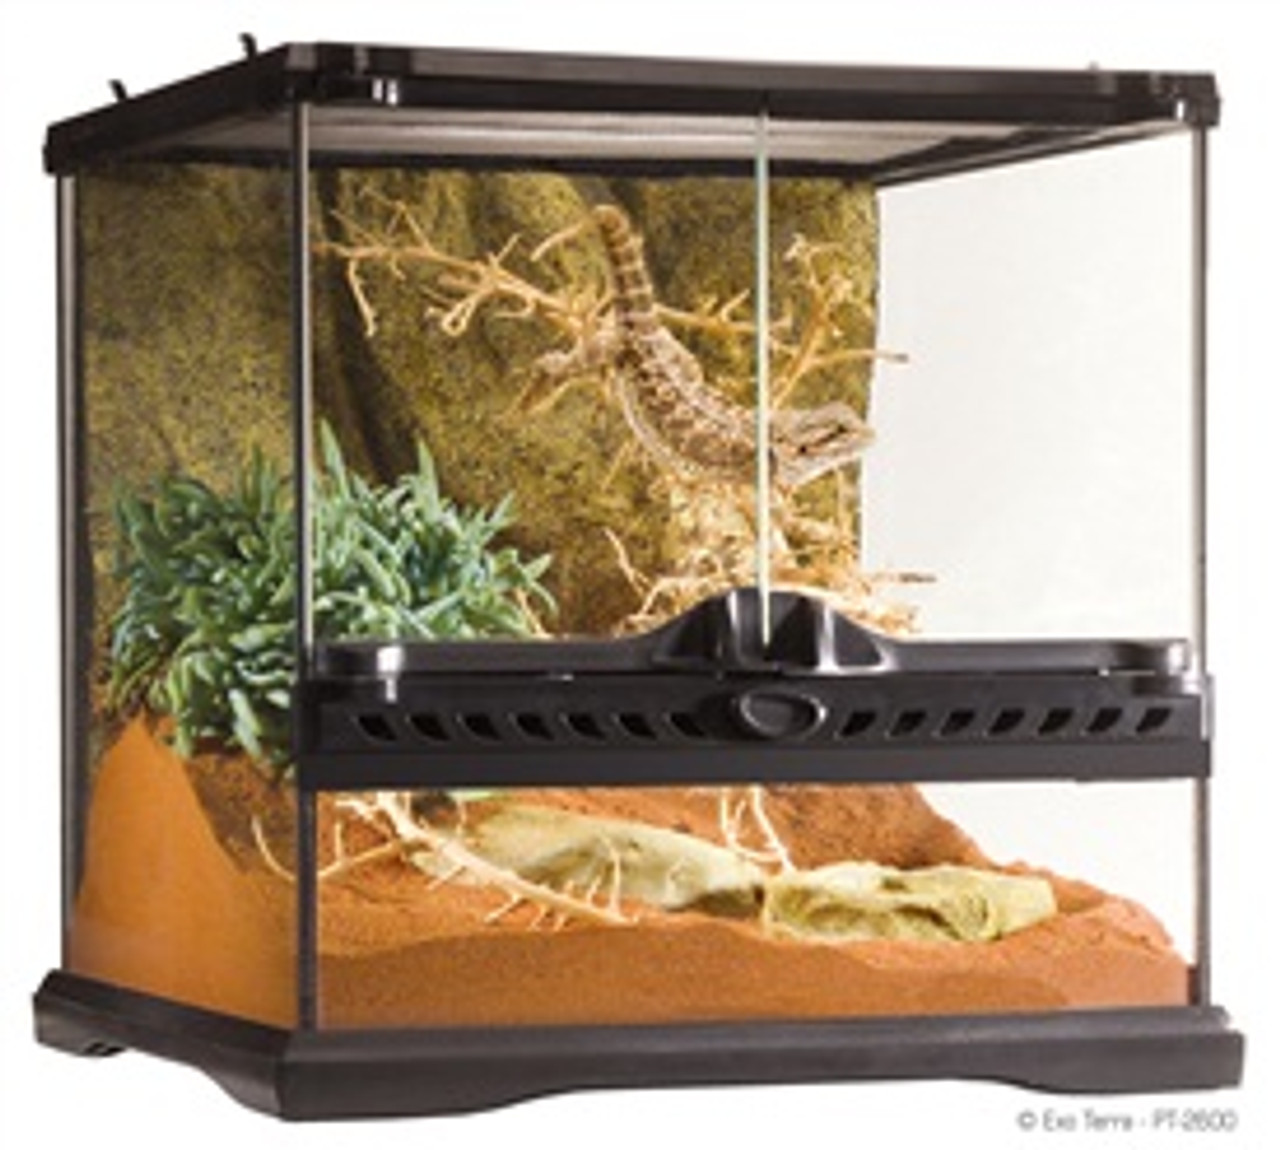 Exo Terra Glass Terrarium Reptile Habitat, 12"x12"x12" Chow Hound